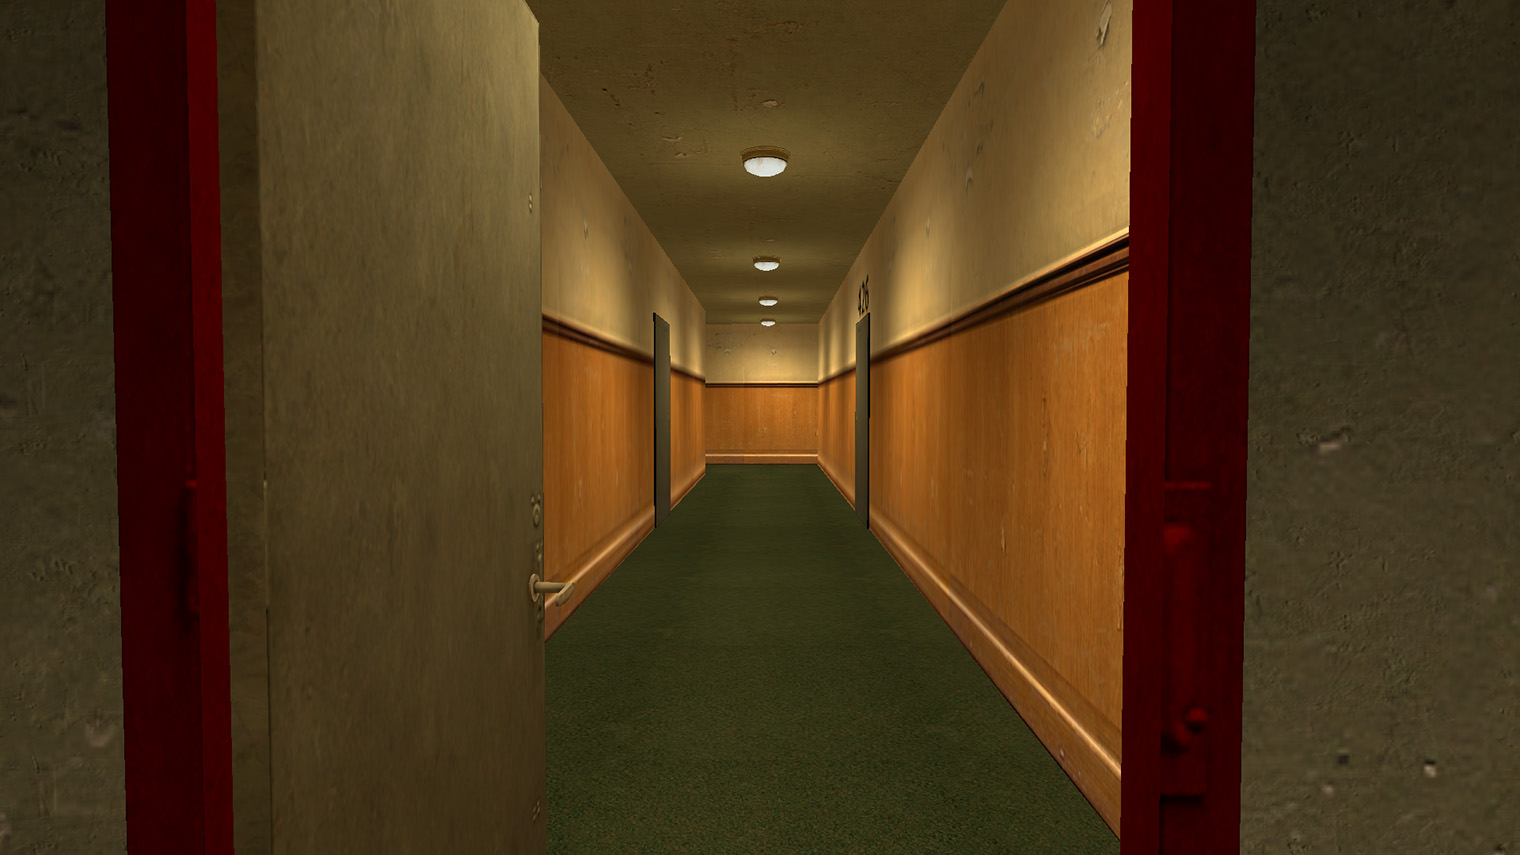 Каждое новое прохождение начинается в этом коридоре. Кадр: Cakebread